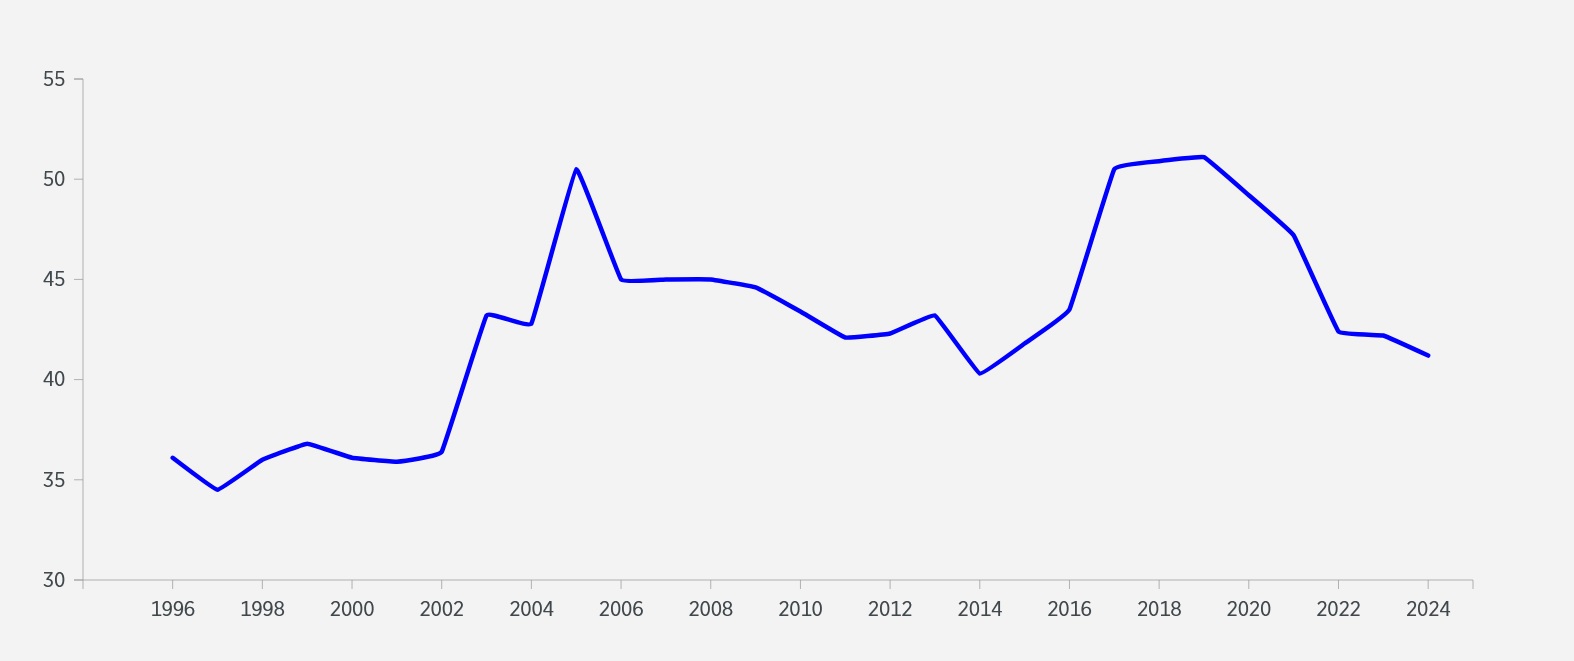 نمودار وضعیت جمهوری اسلامی در گزارش‌های سالانه شاخص آزادی اقتصادی بنیاد هریتیج